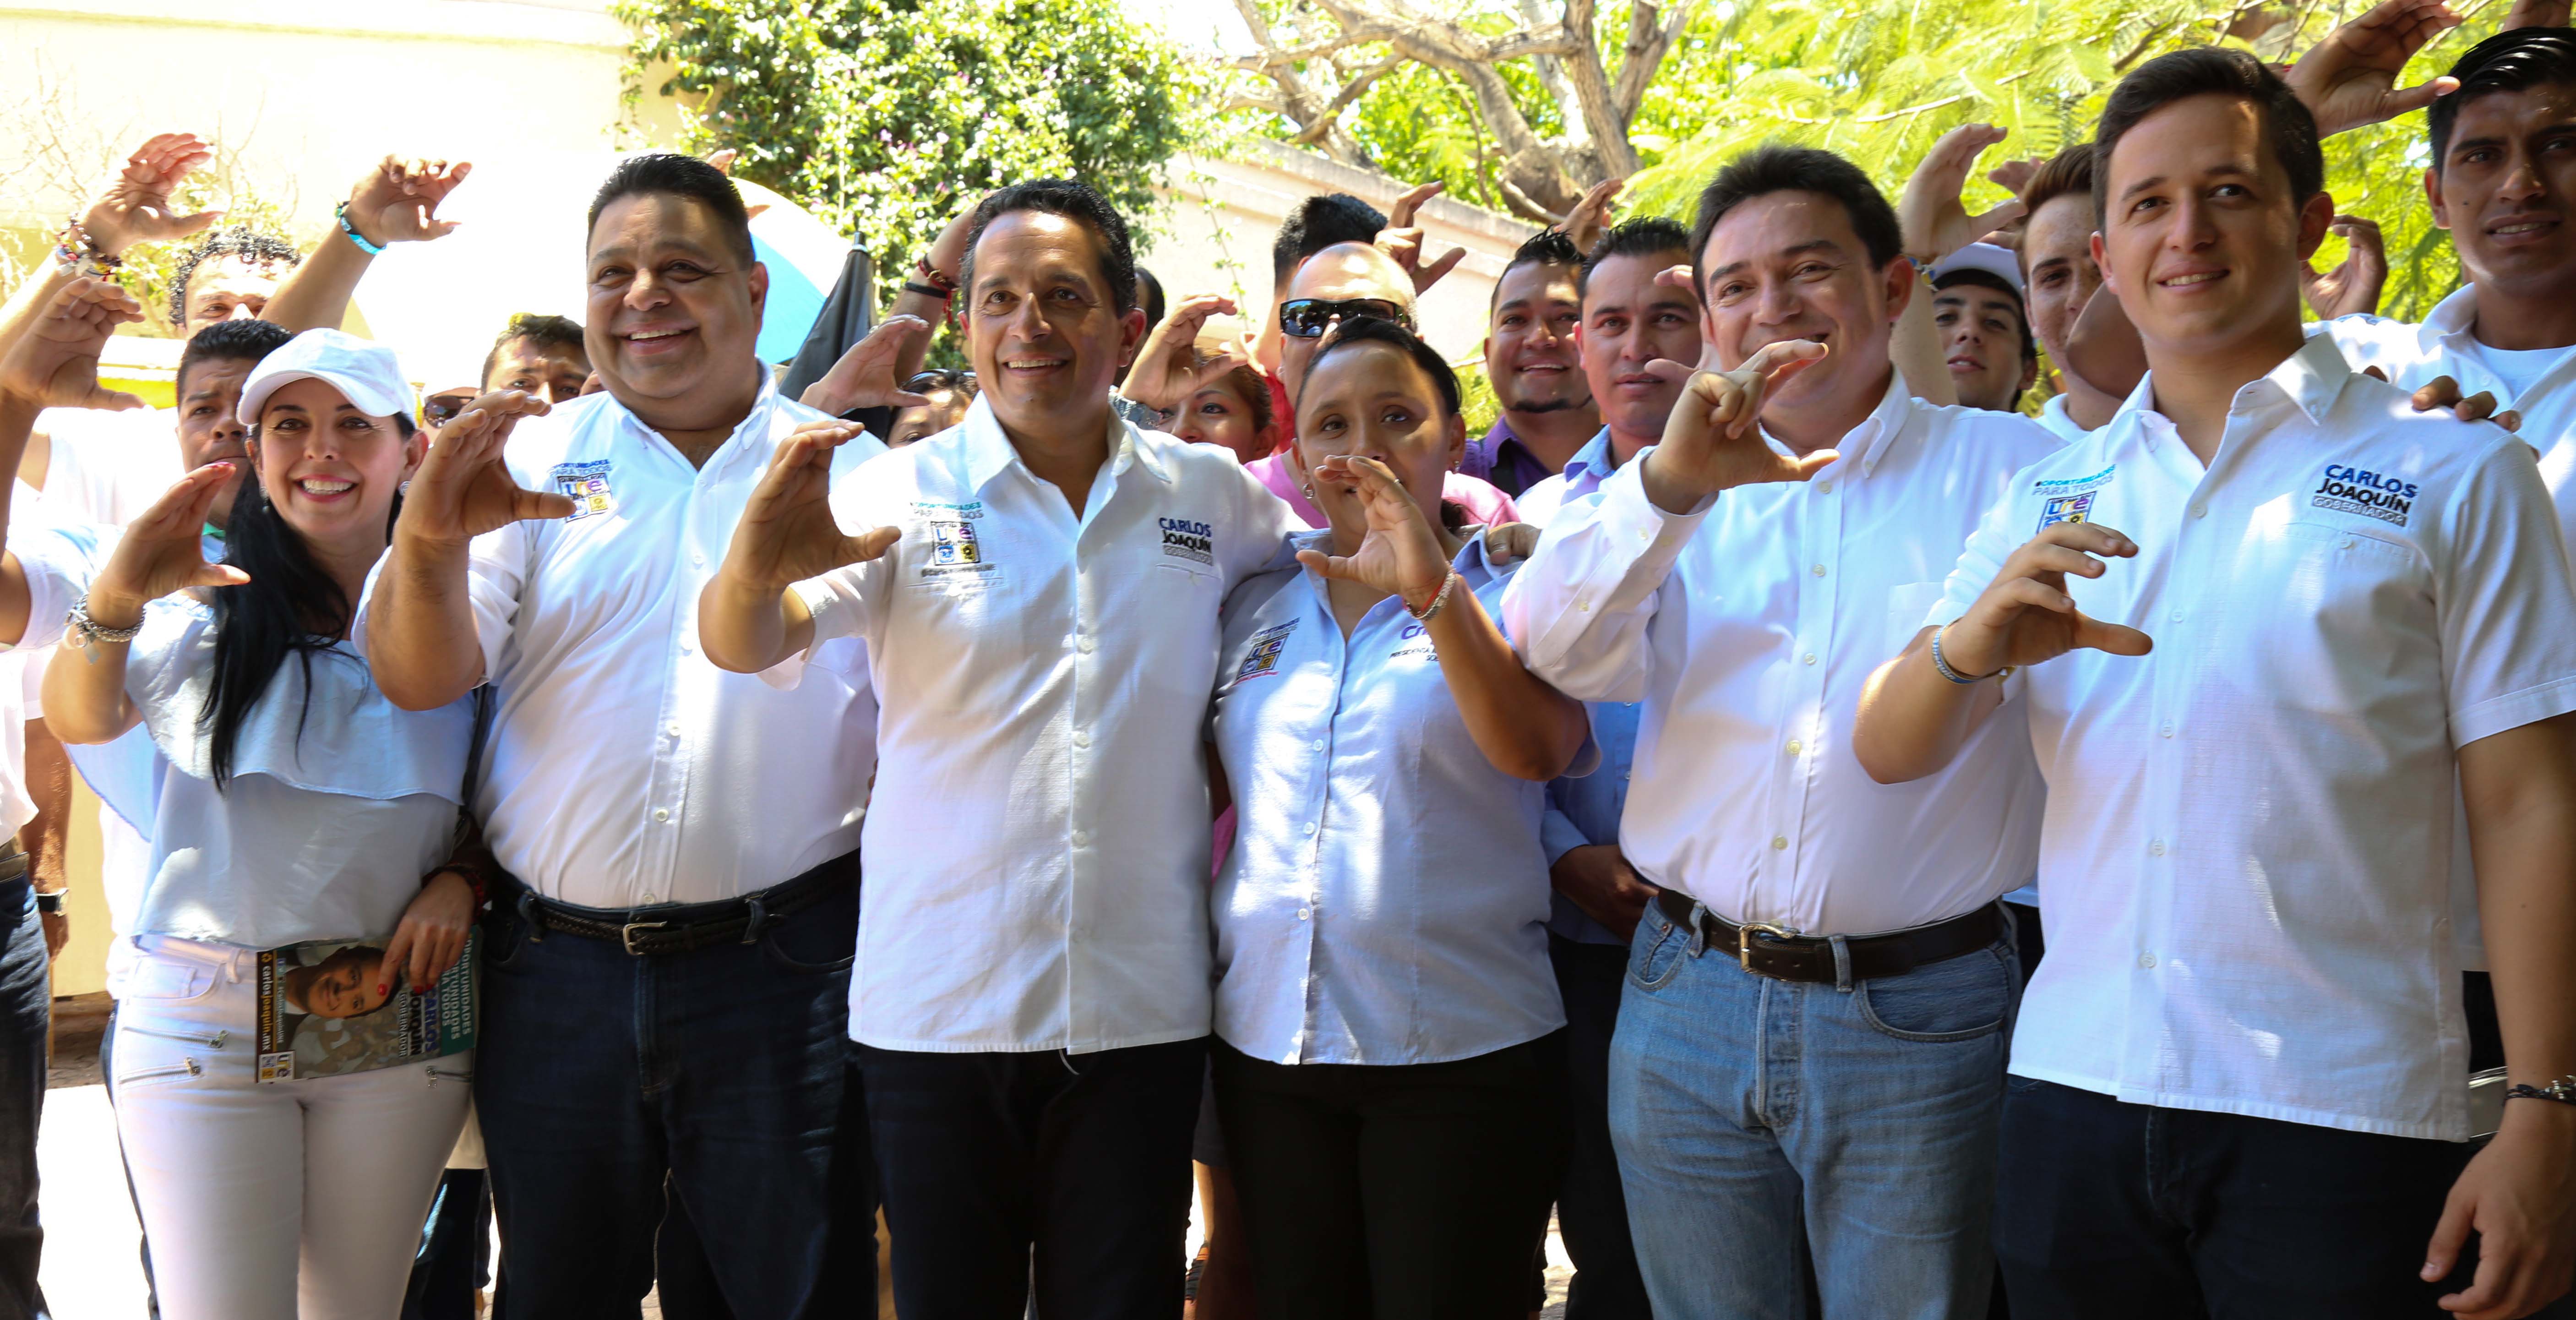 El senador Daniel Ávila junto a Carlos Joaquín y los candidatos a diputados por los Distritos IX y X, Orlando Muñoz y Laura Beristaín. El senador estuvo en Playa del Carmen junto a otros legisladores dando su apoyo a la alianza PAN-PRD.